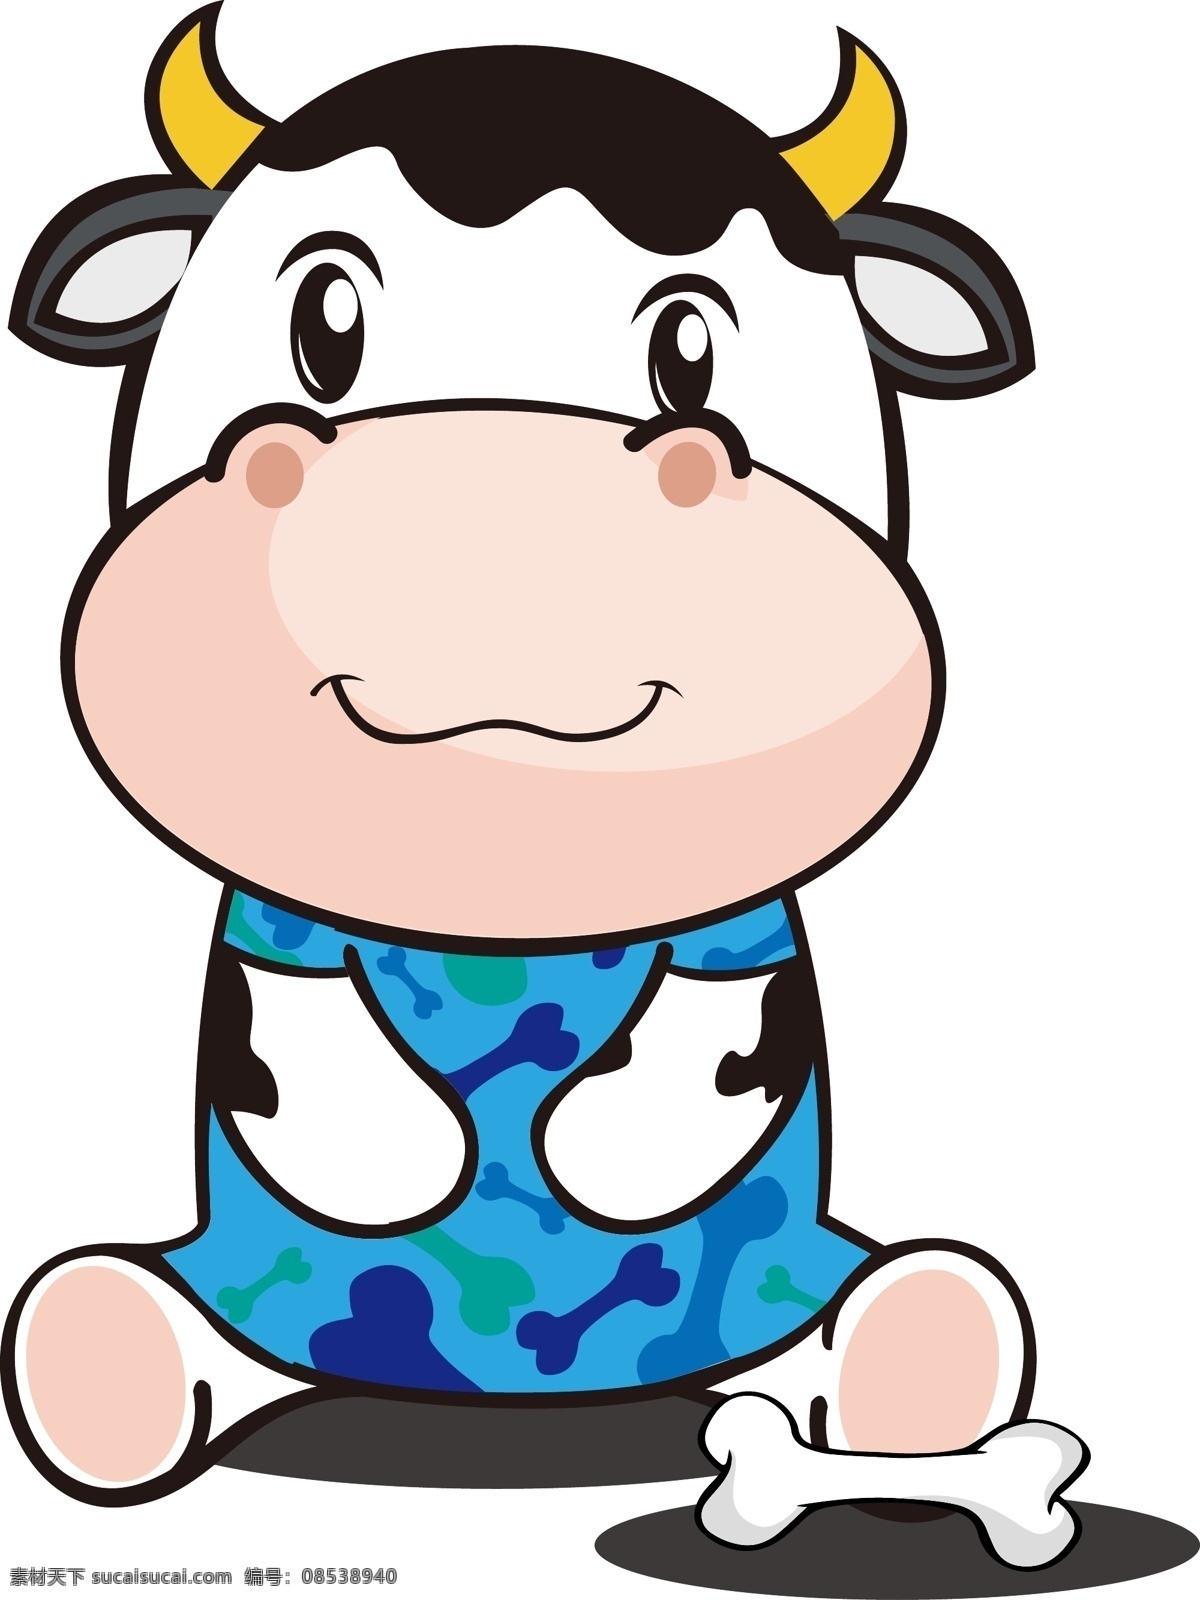 坐下 卡通 牛角 牛头 可爱 奶牛 骨头 牛角牛 头可爱 动漫动画 动漫人物